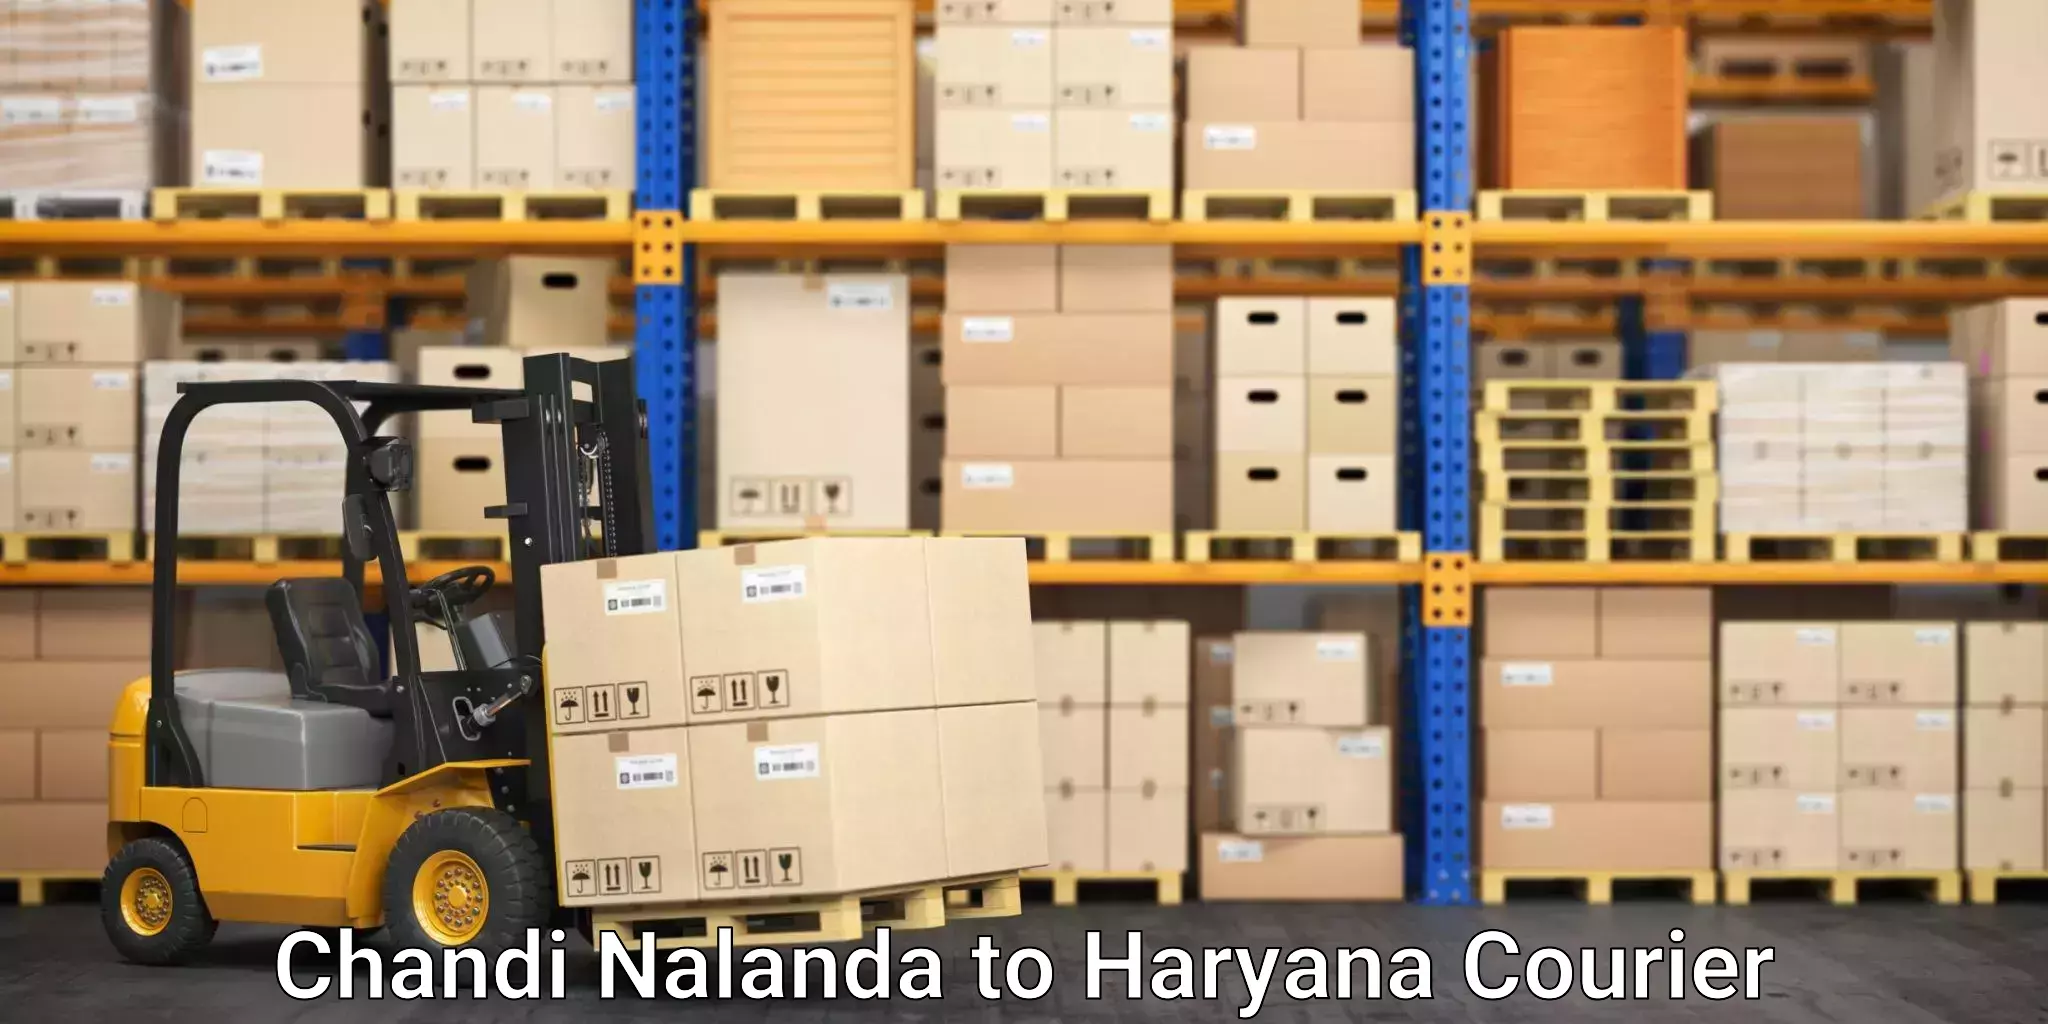 Moving and handling services Chandi Nalanda to Chandi Rohtak